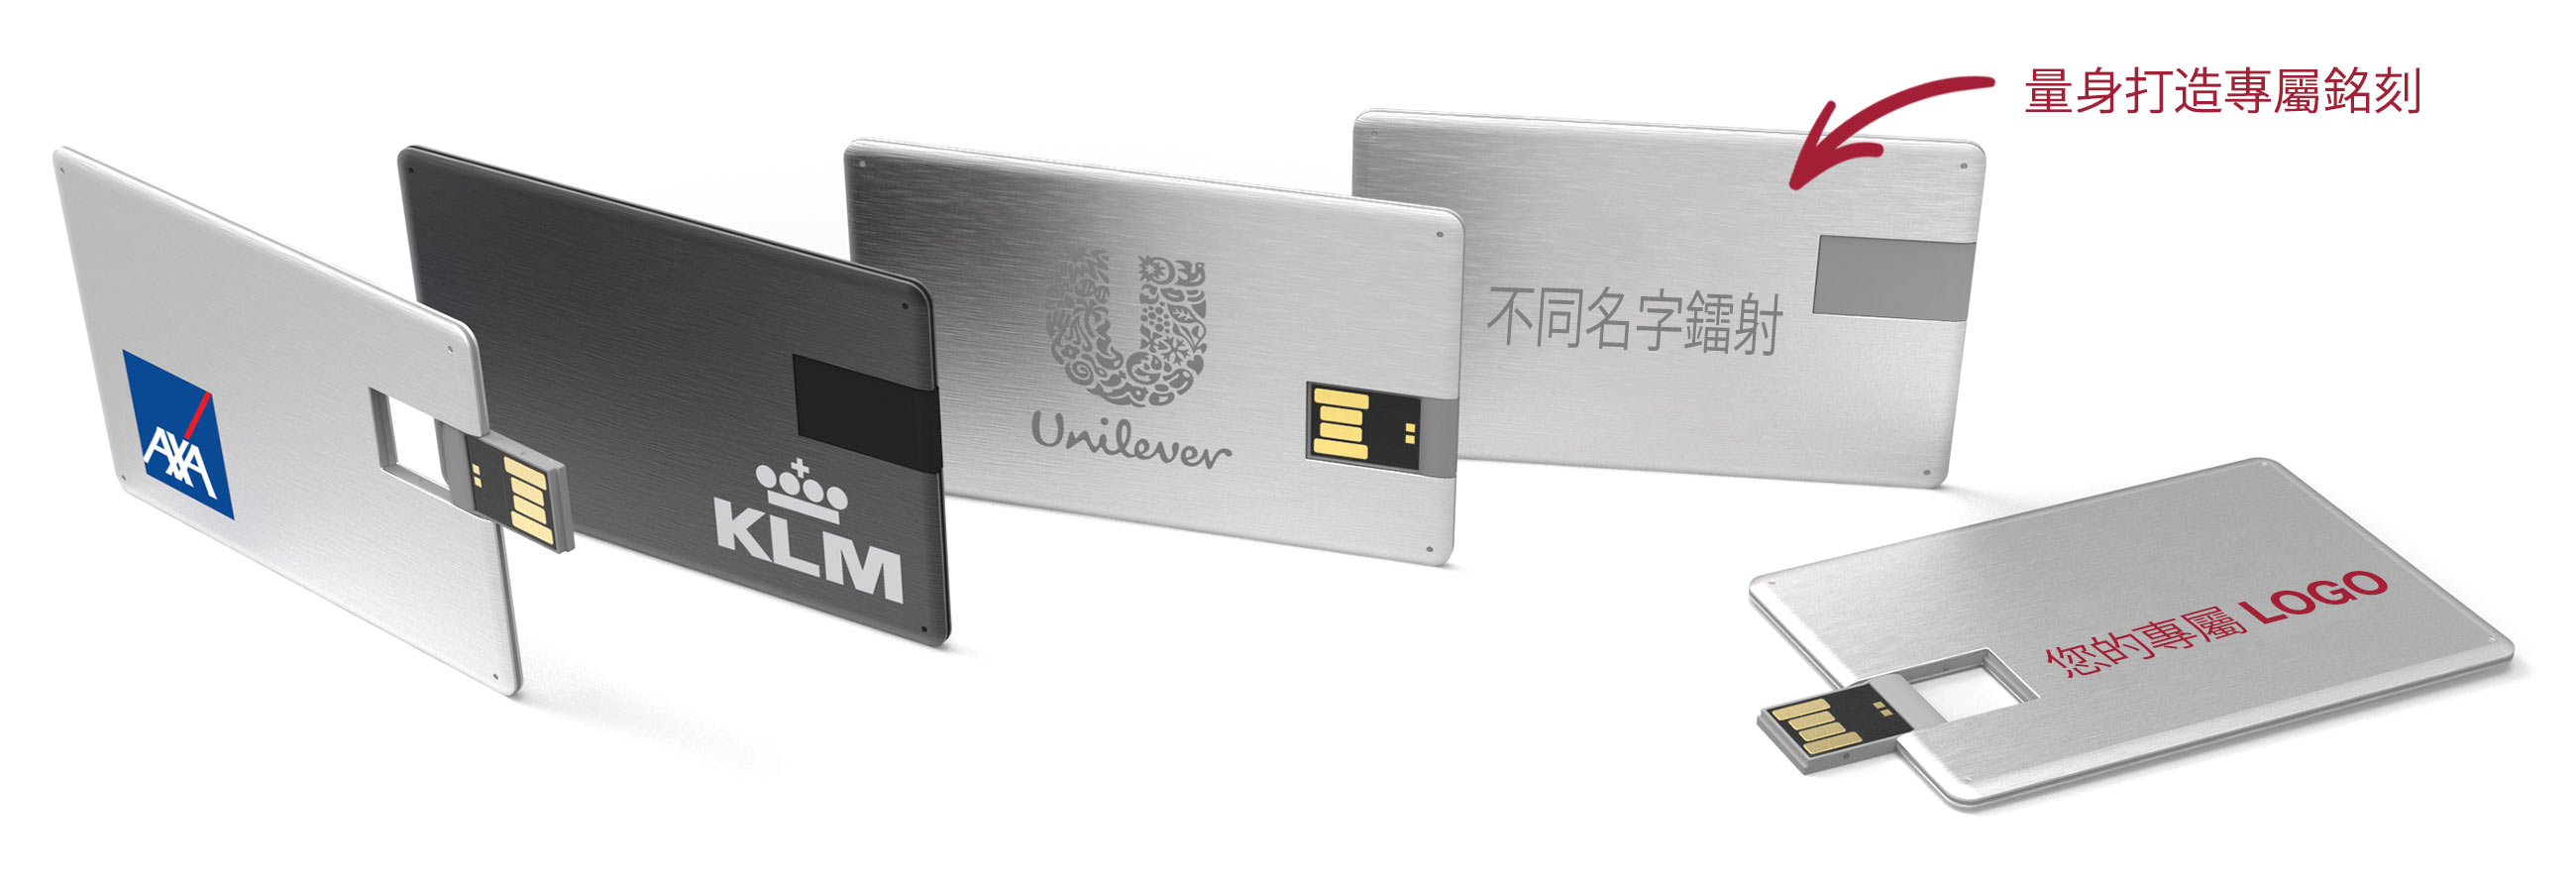 Alloy USB卡片型隨身行動碟